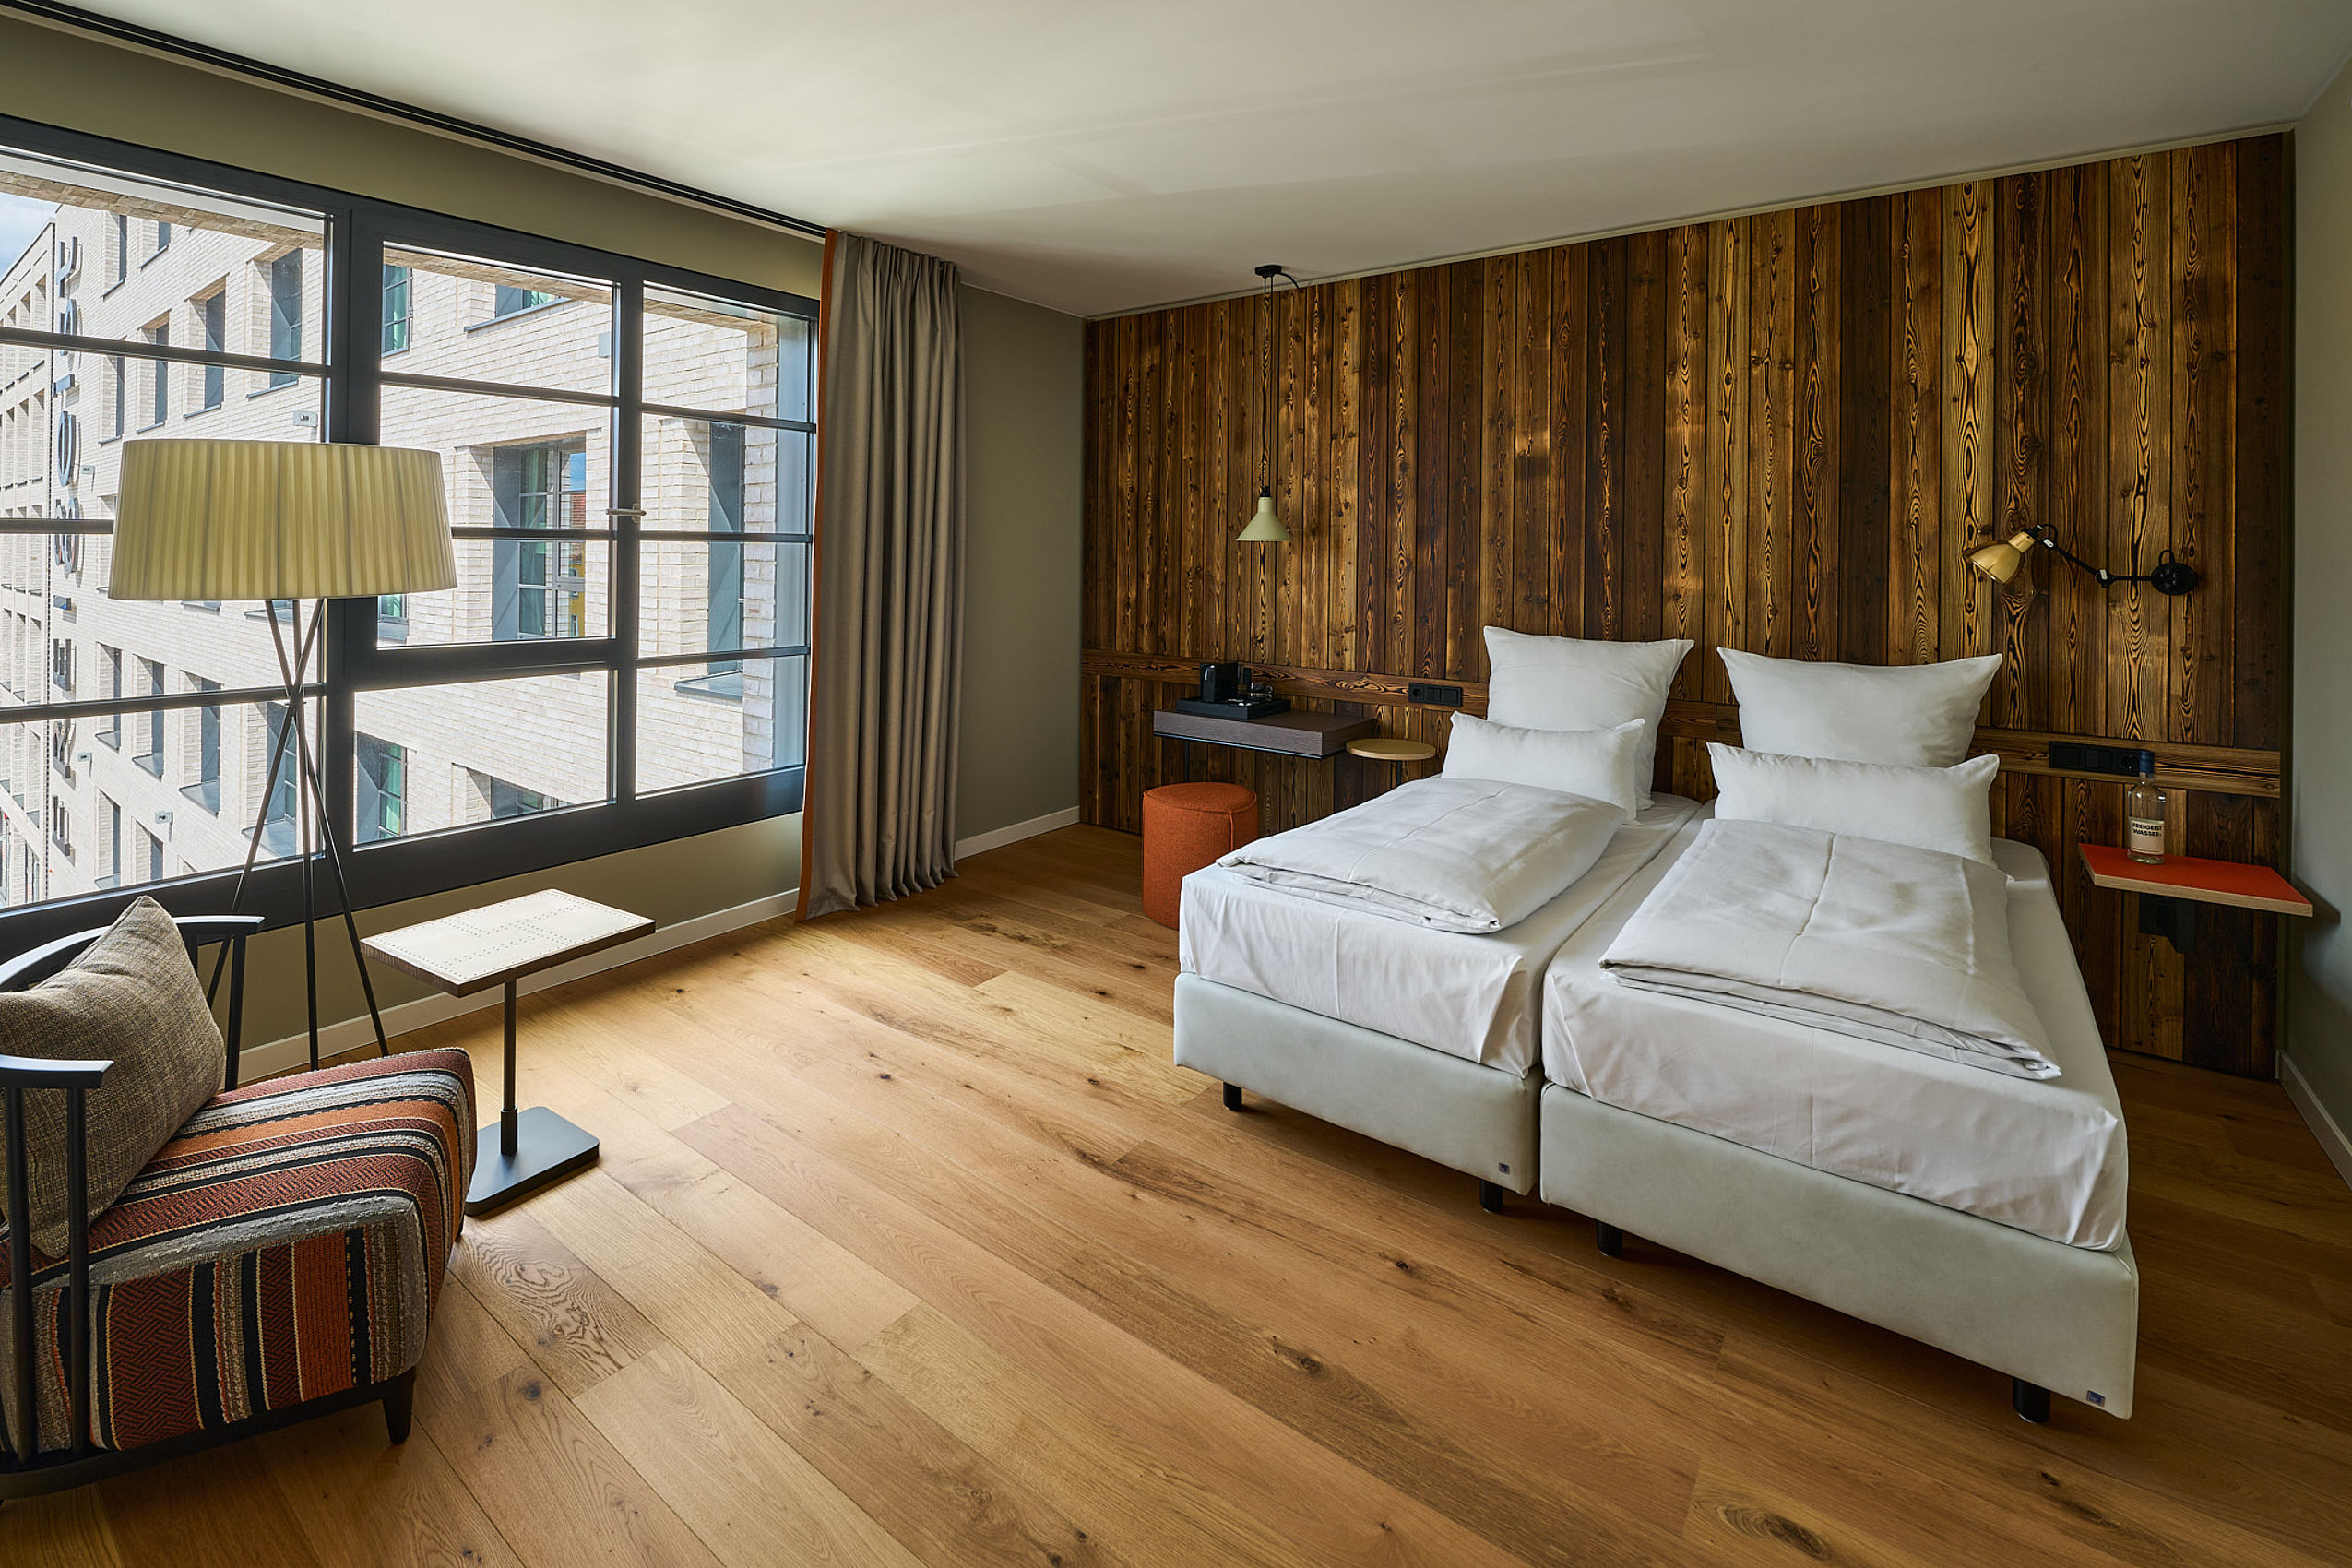 Ein schönes Hotelzimmer des FREIgeist in Göttingen Nordstadt mit einer dunklen Holzwand, einem frisch gemachten Bett, einer Stehlampe und großen Fenstern